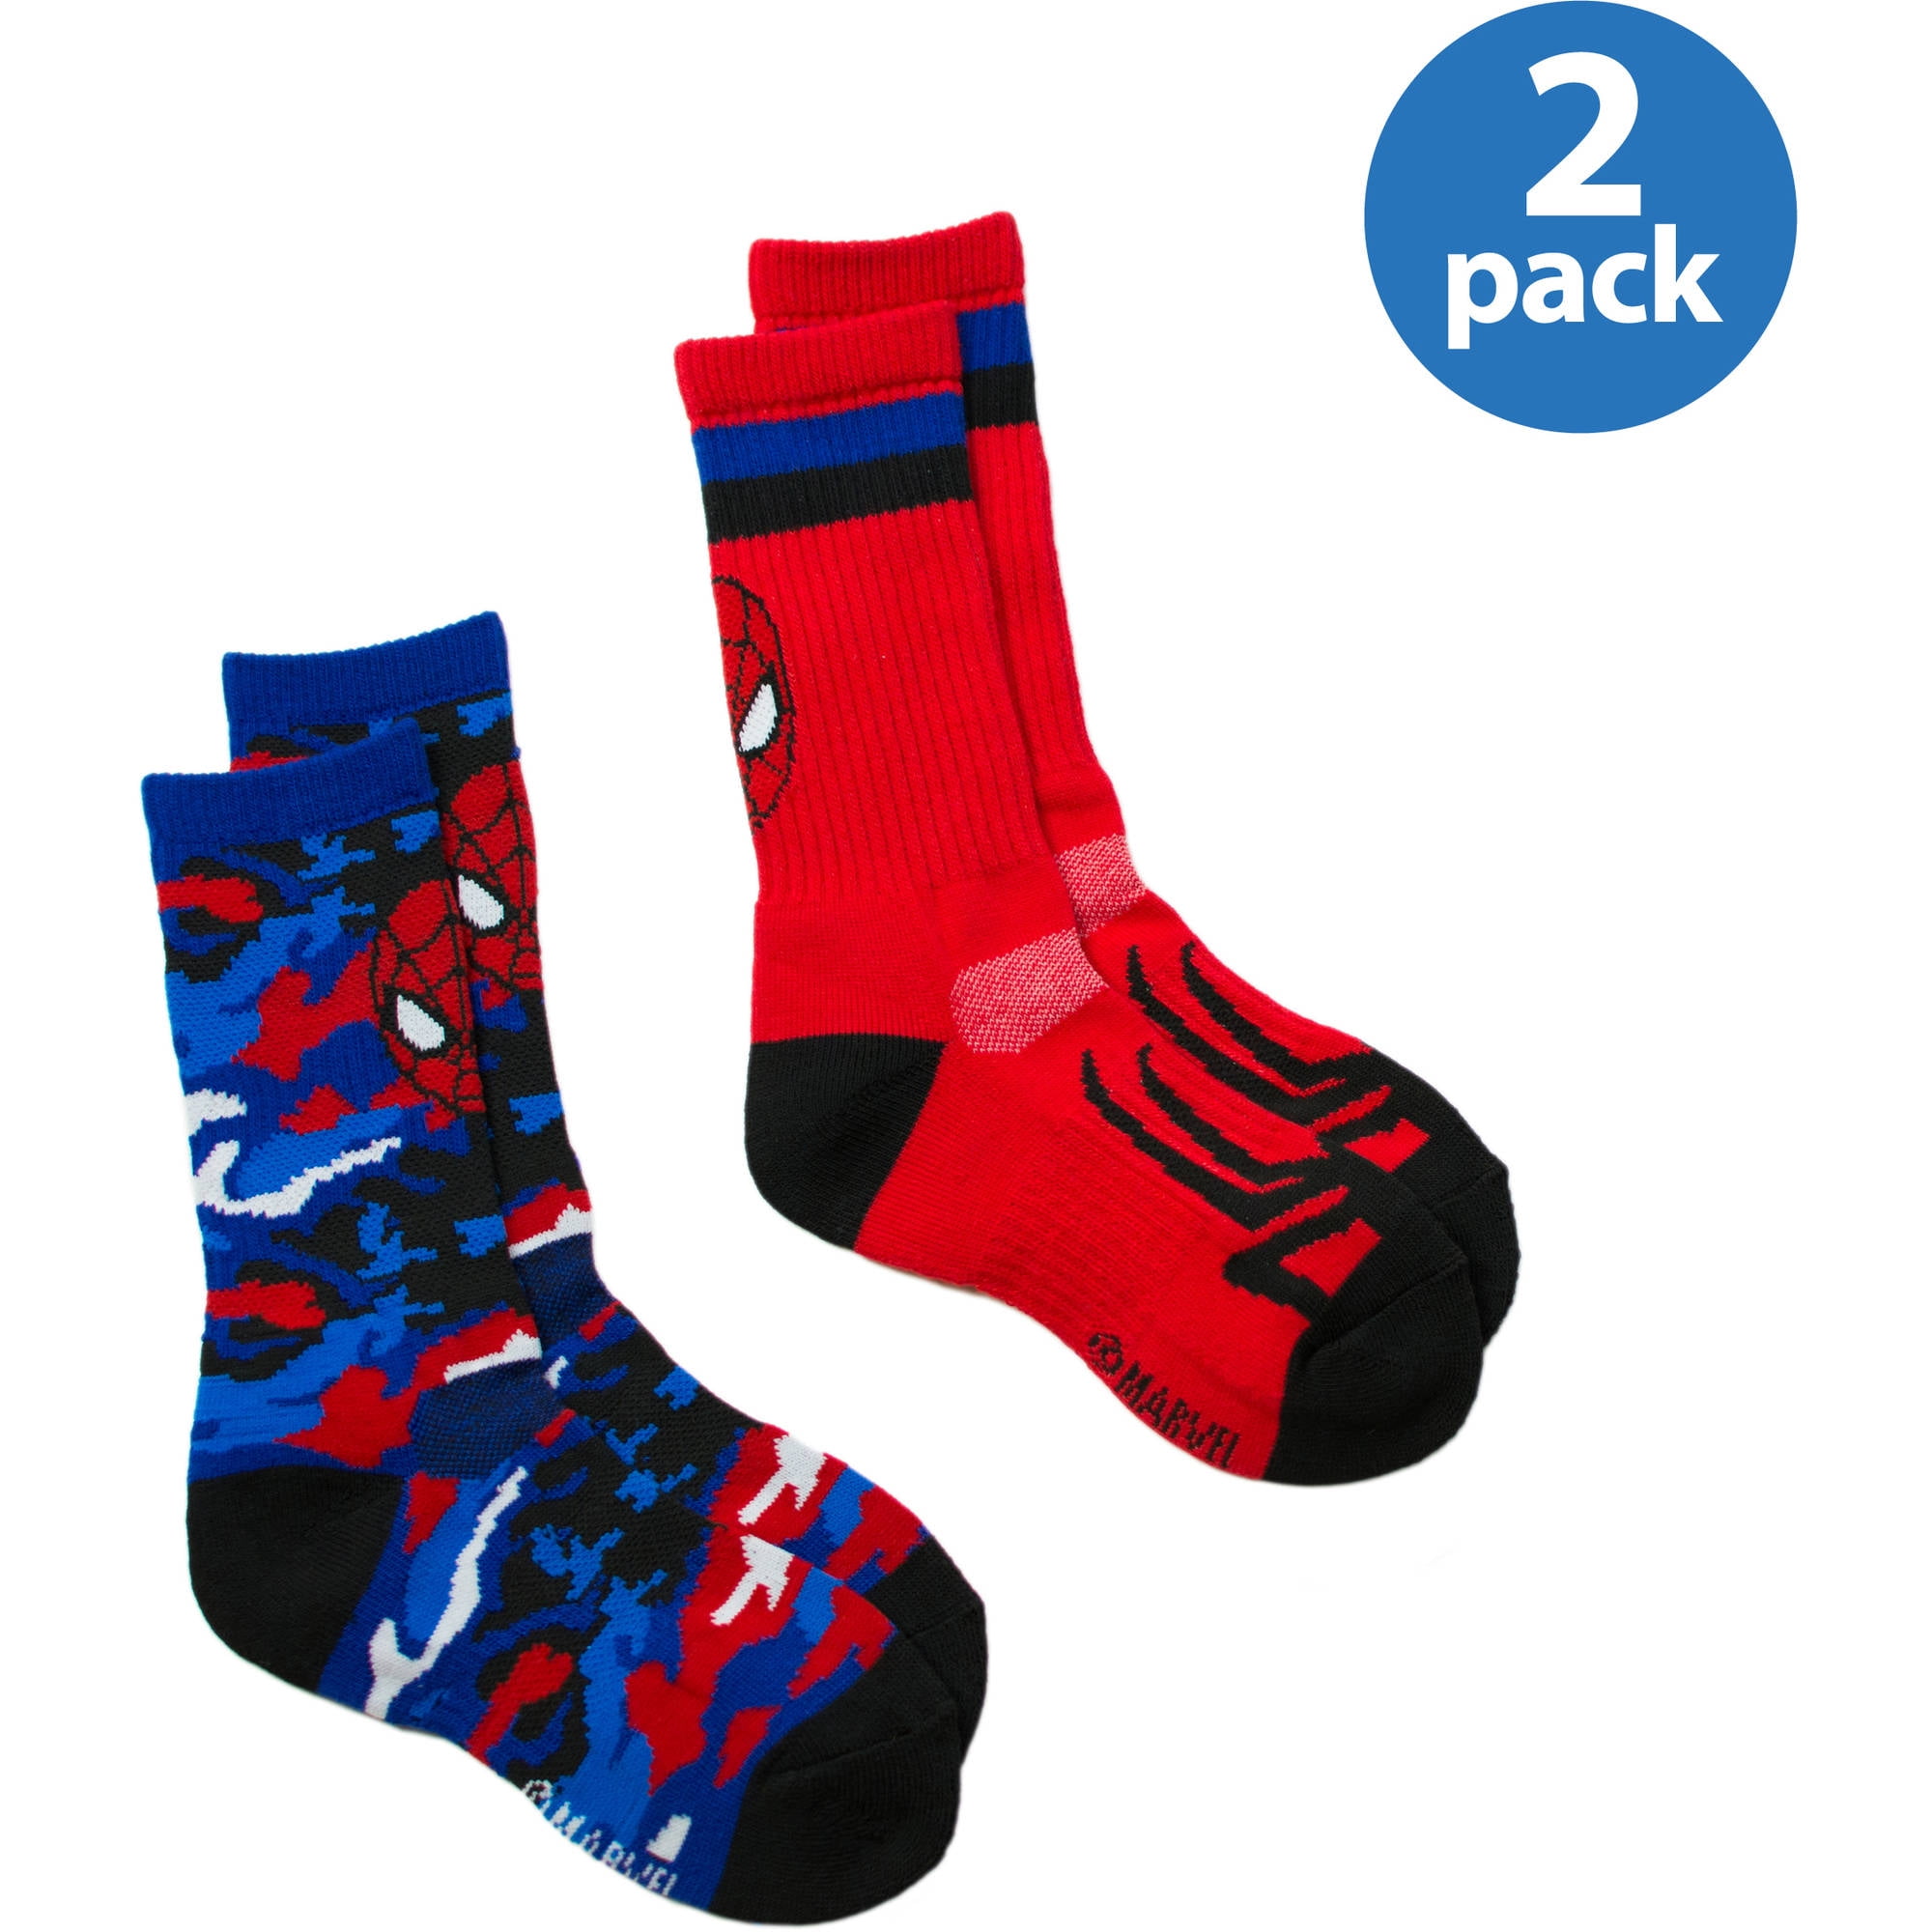 Spiderman Socks,Superhero Boys 5 Pack Socks